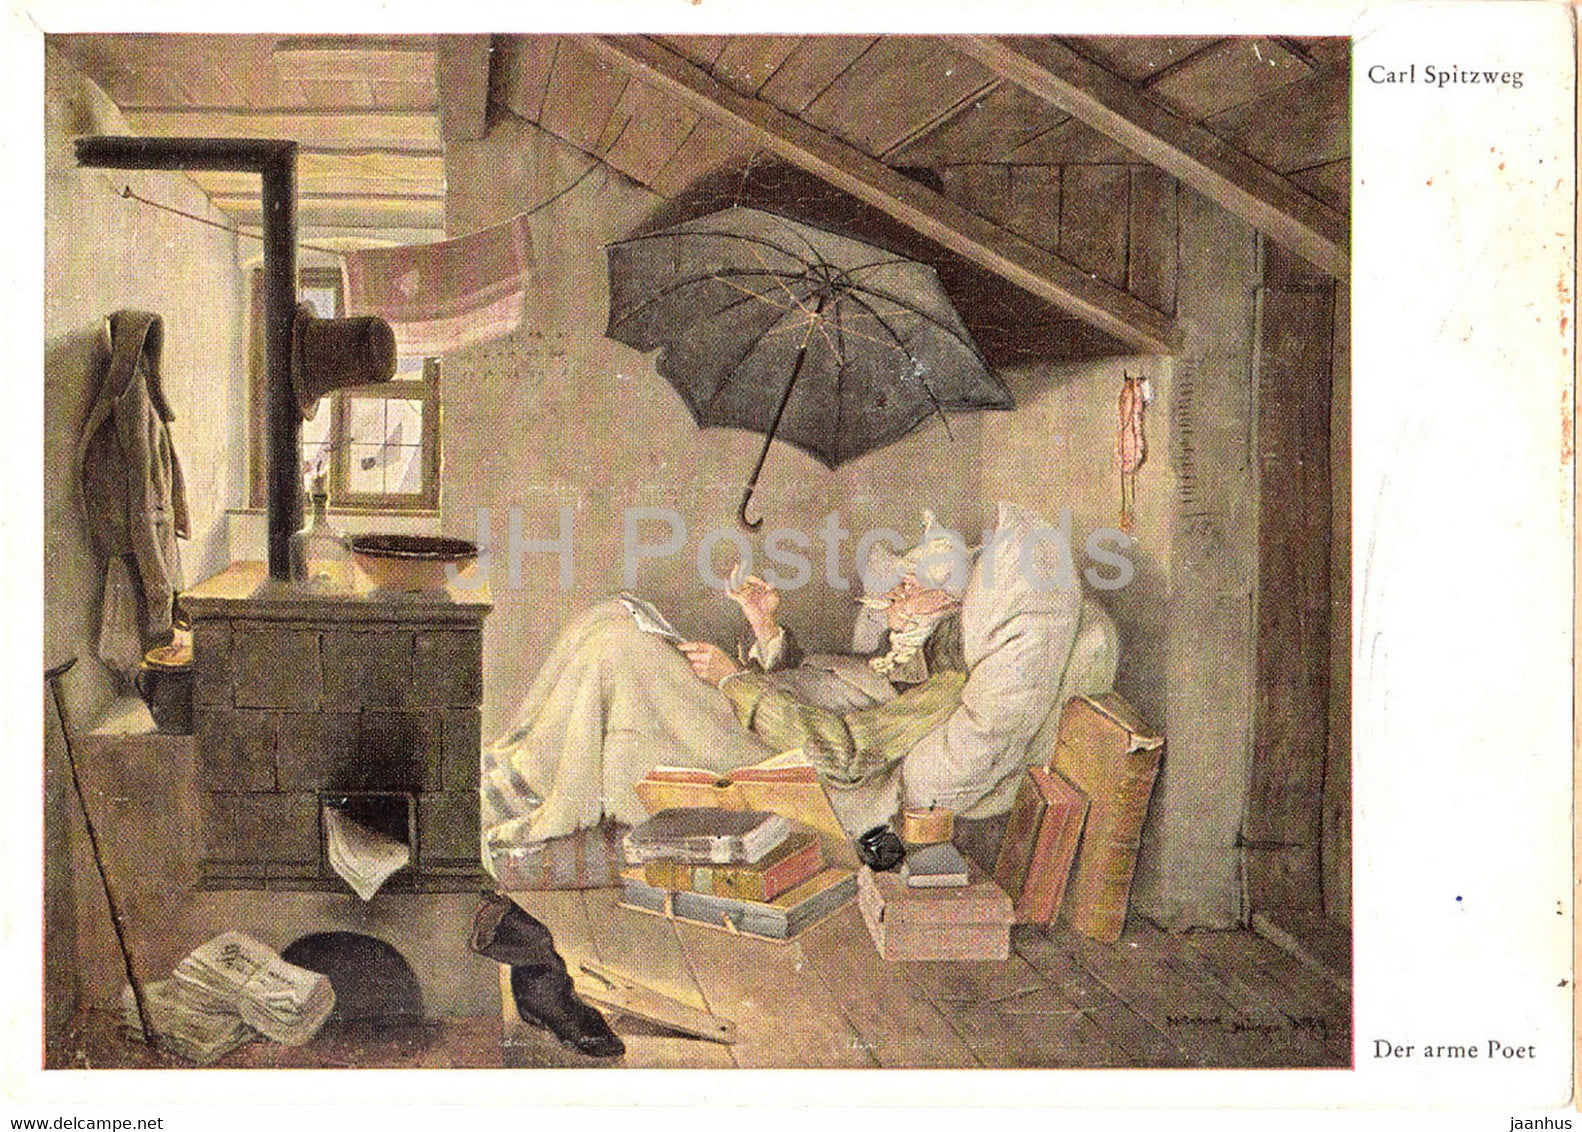 painting by Carl Spitzweg - Der arme Poet - umbrella - 8001 - old postcard - German art - Germany - unused - JH Postcards